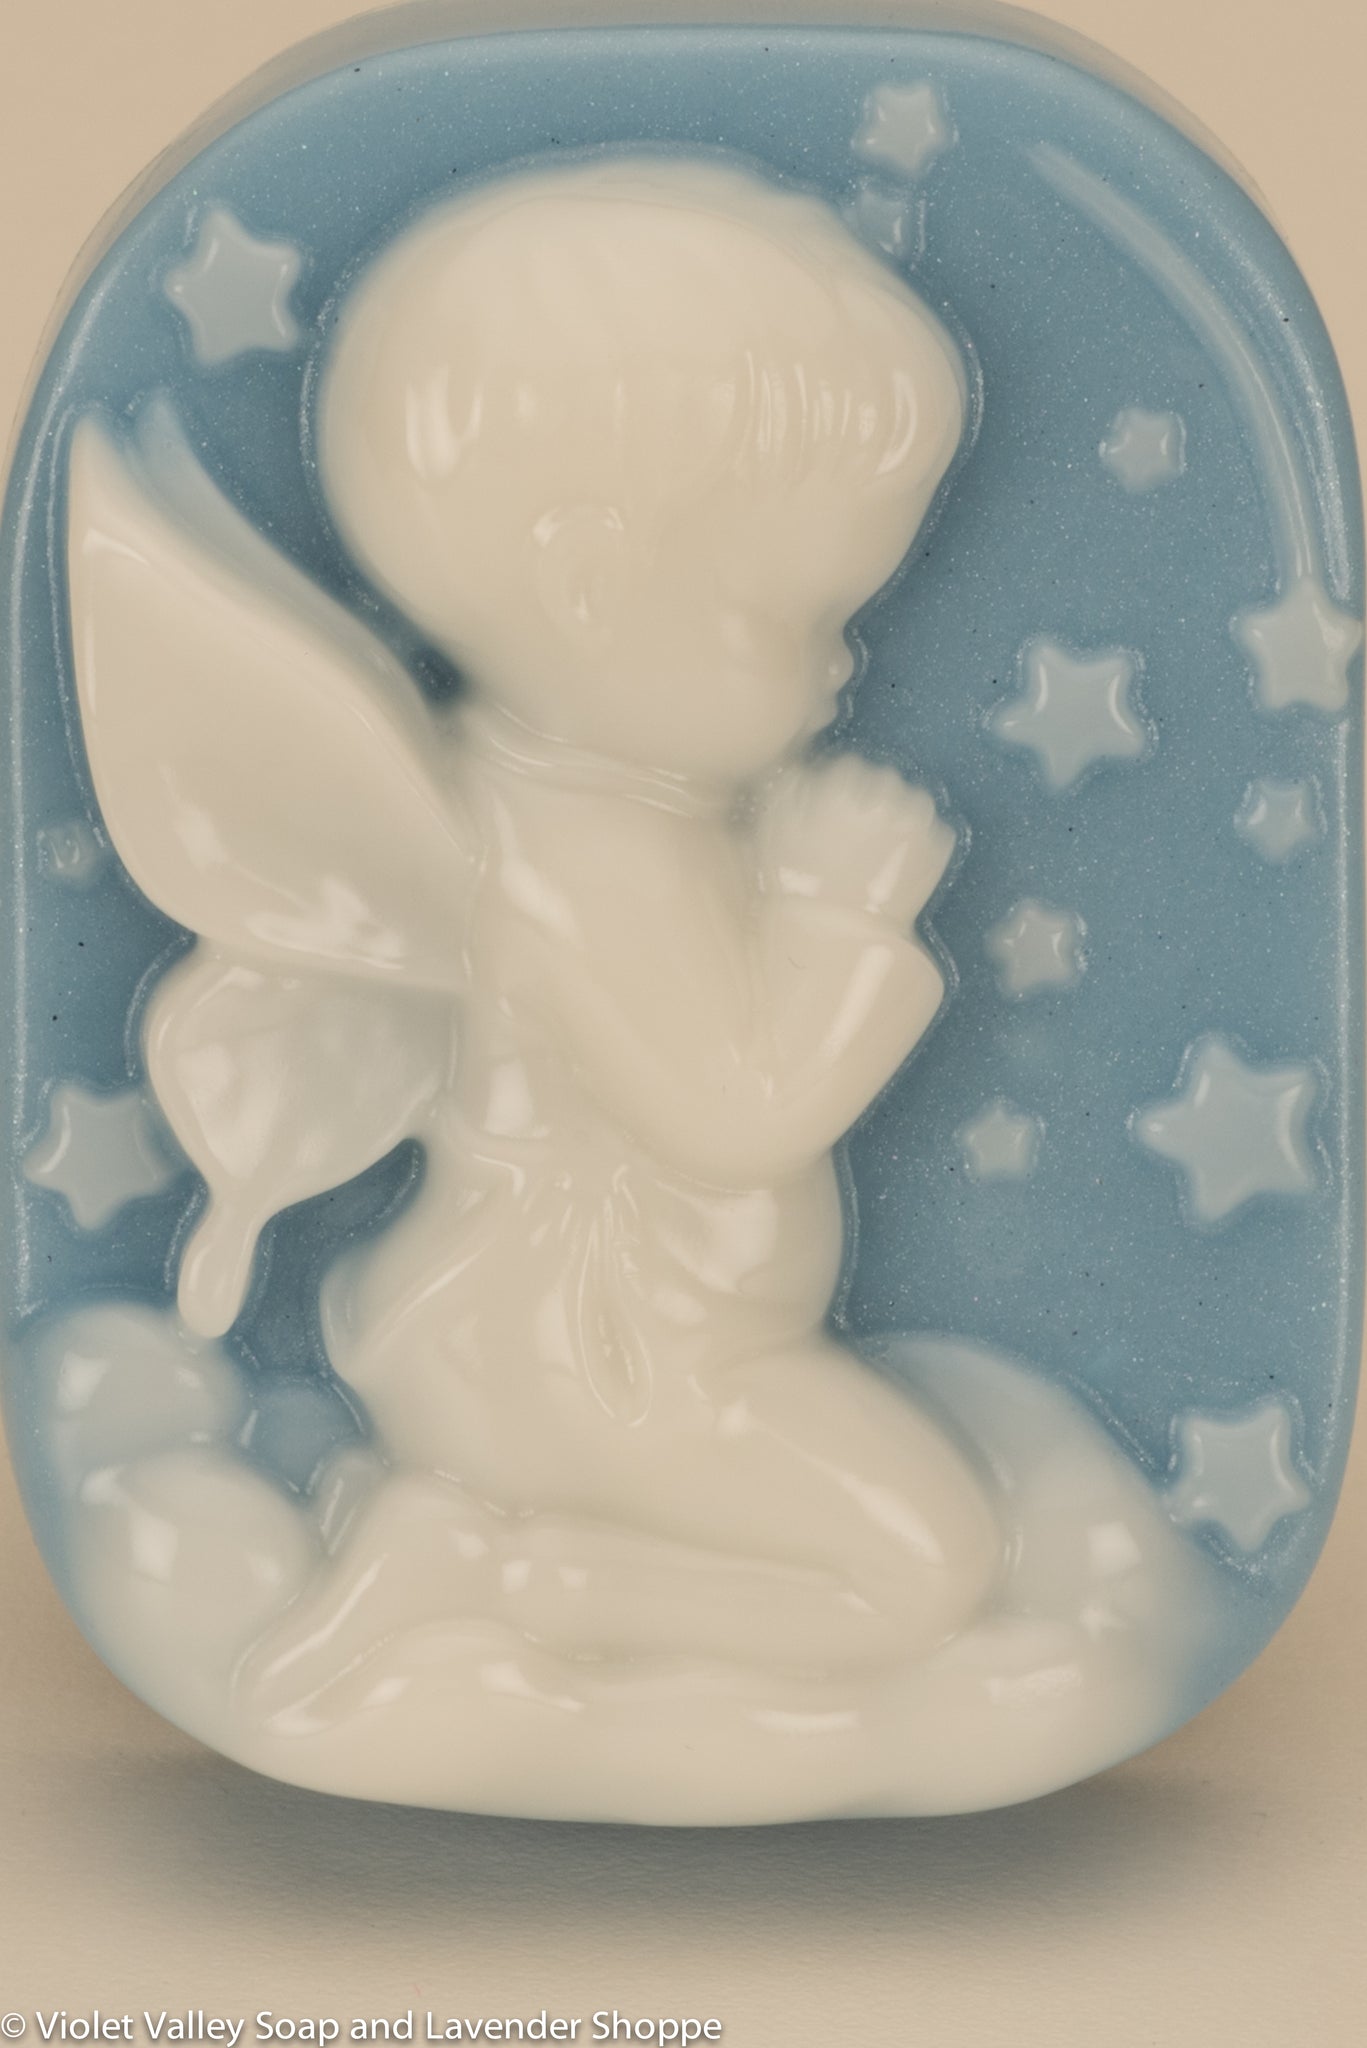 Little Angel Boy Soap Bar | Violet Valley